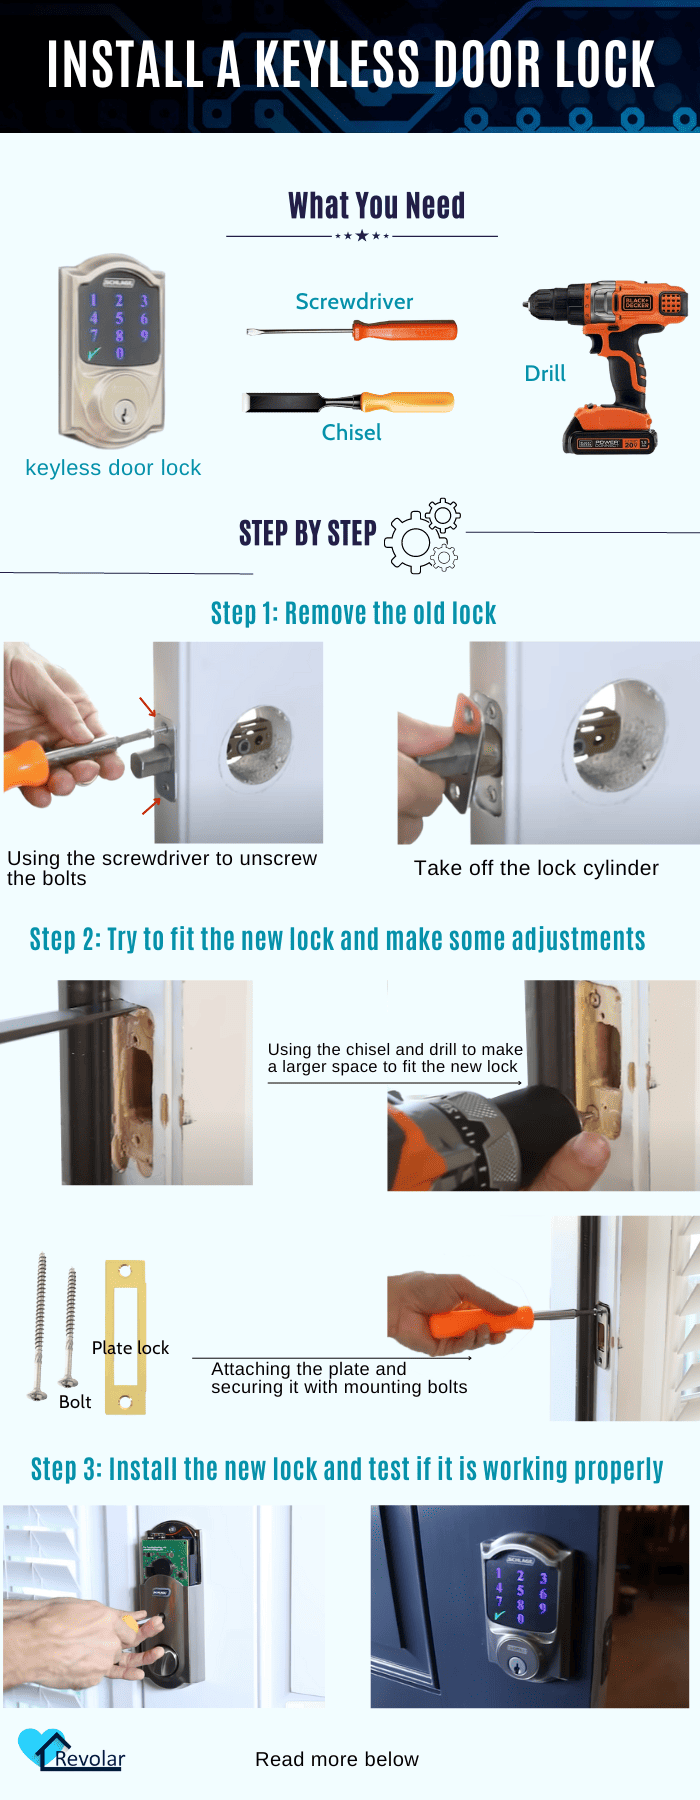 install-a-keyless-door-lock